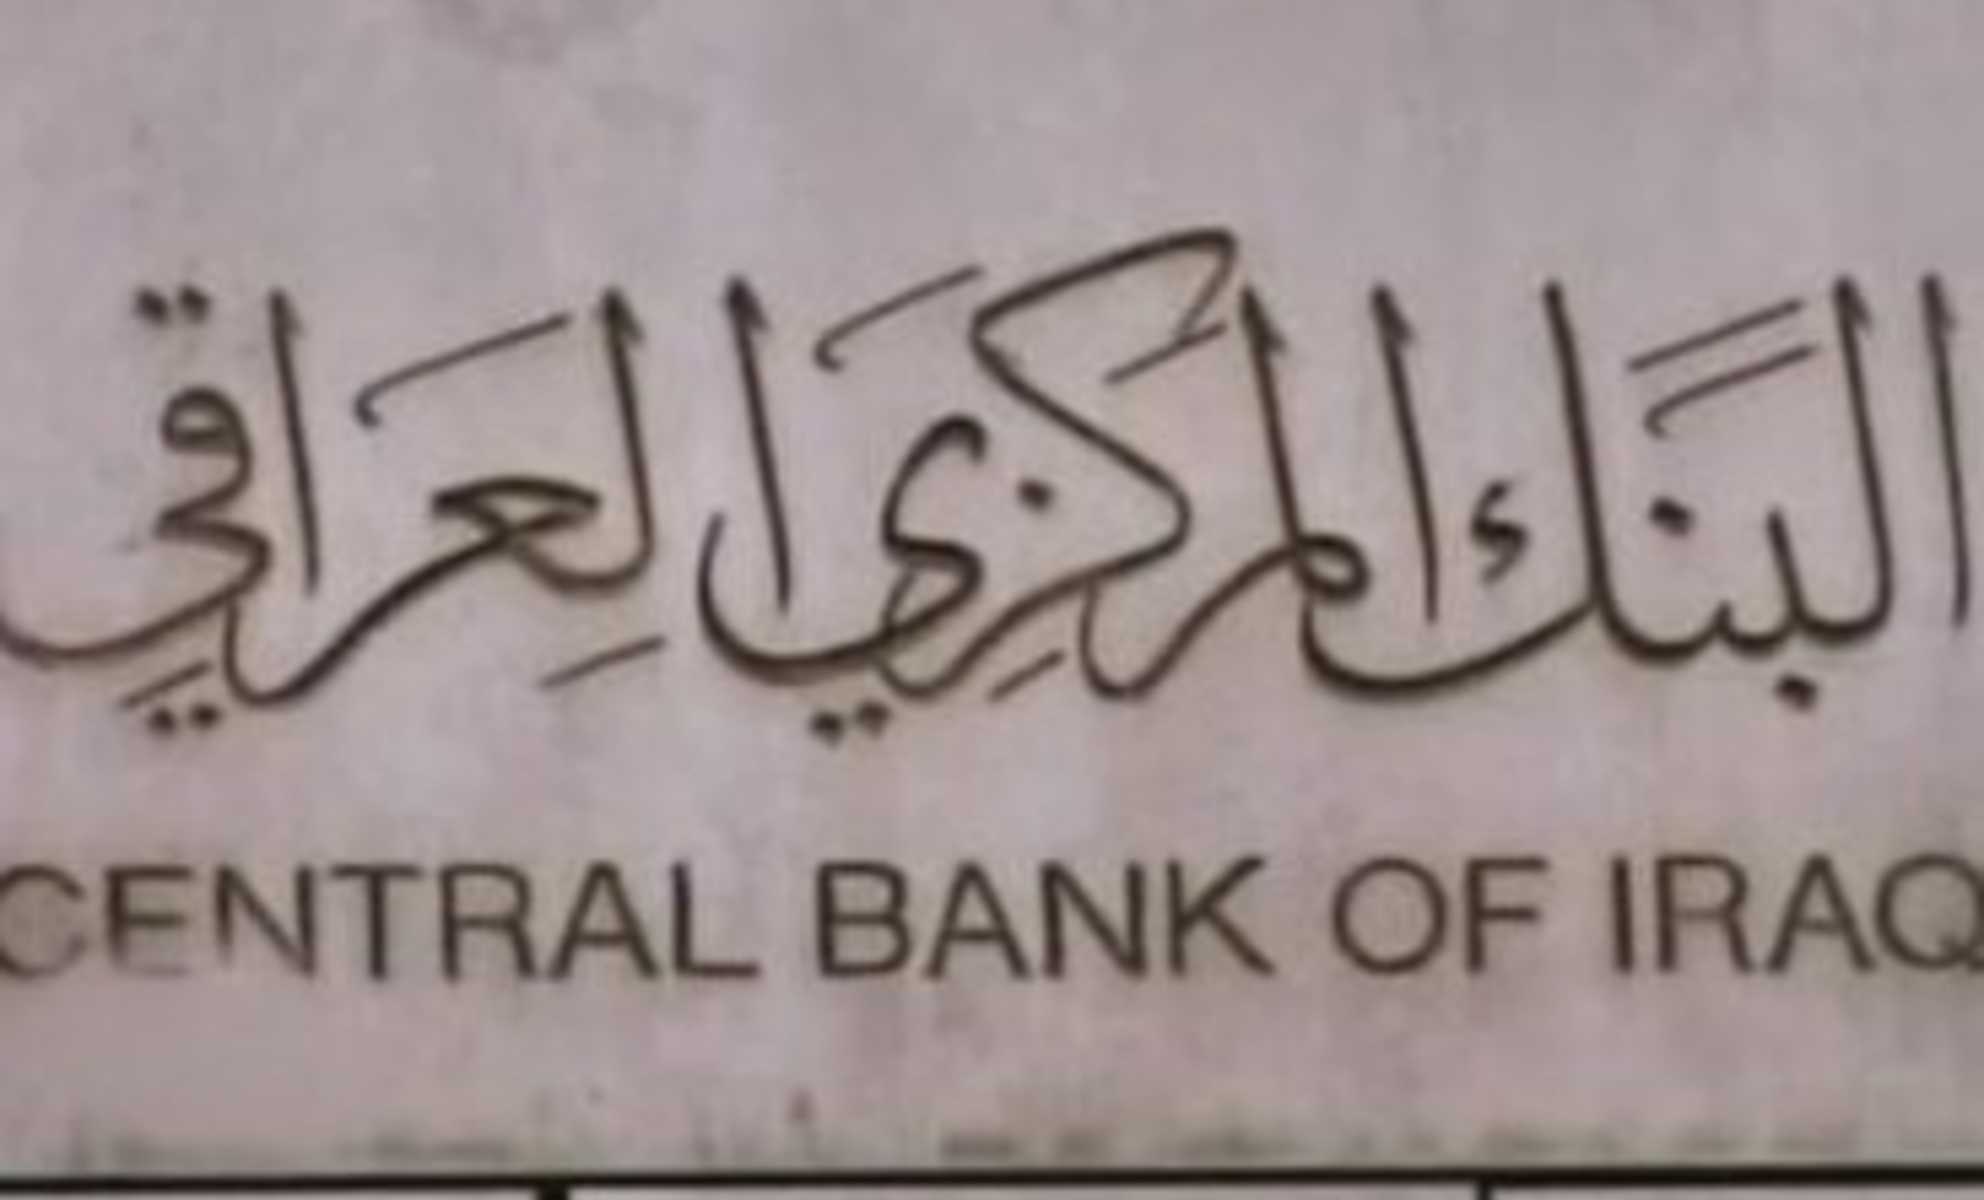 السلطات الأمريكية:س” ندافع” عن حصانة جميع احتياطيات وأموال البنك المركزي العراقي